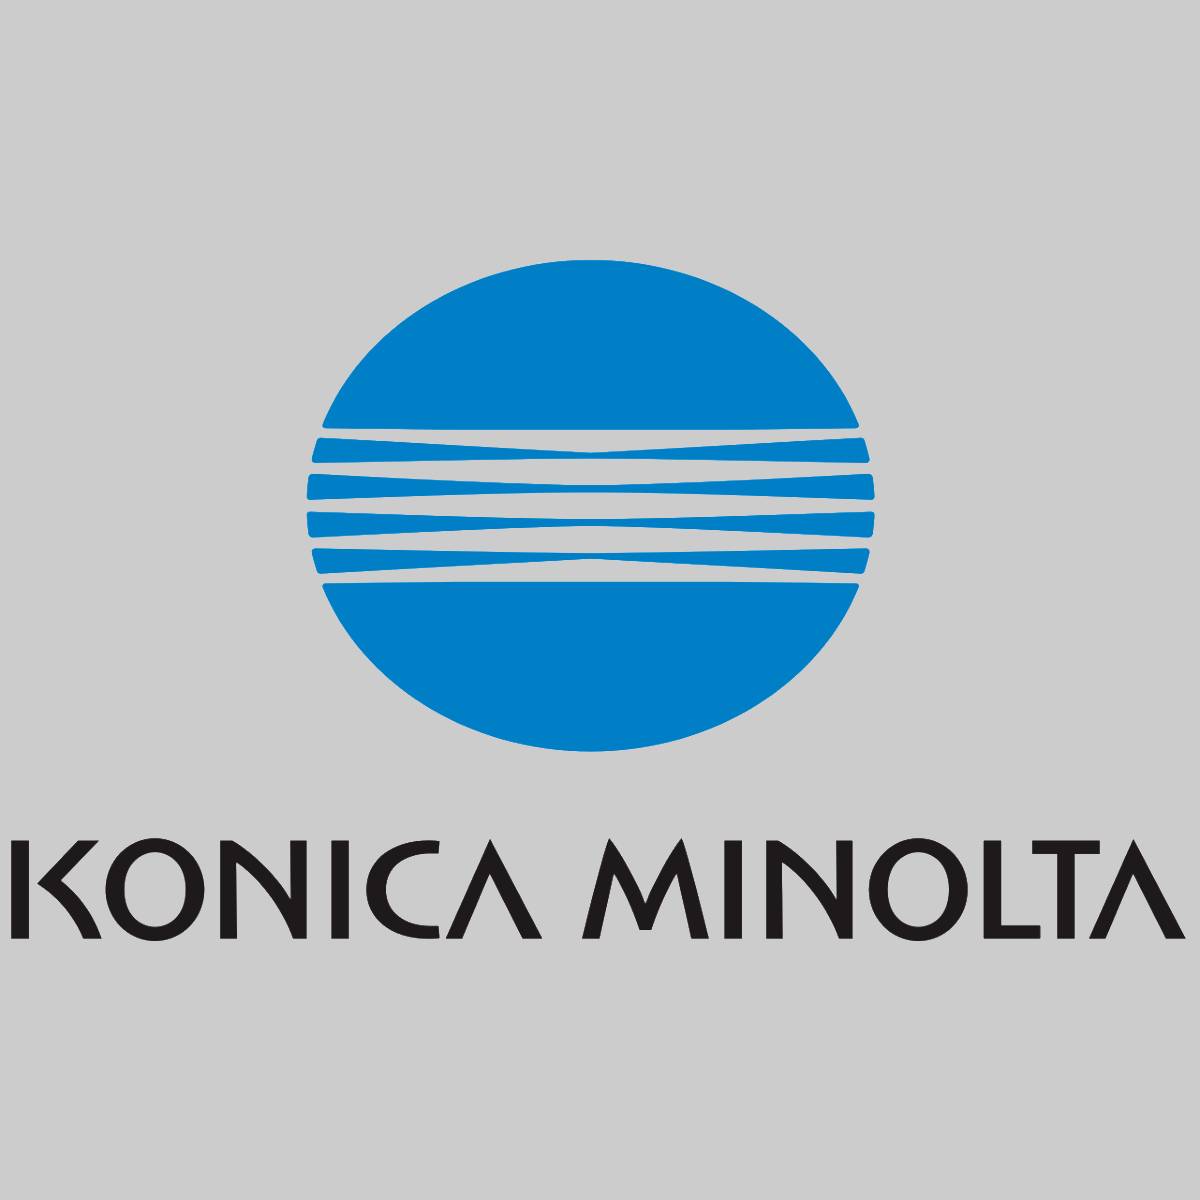 Originele Konica Minolta IUP35K IUP35 zwarte beeldverwerkingseenheid AAJV01D voor Bizhub 3300